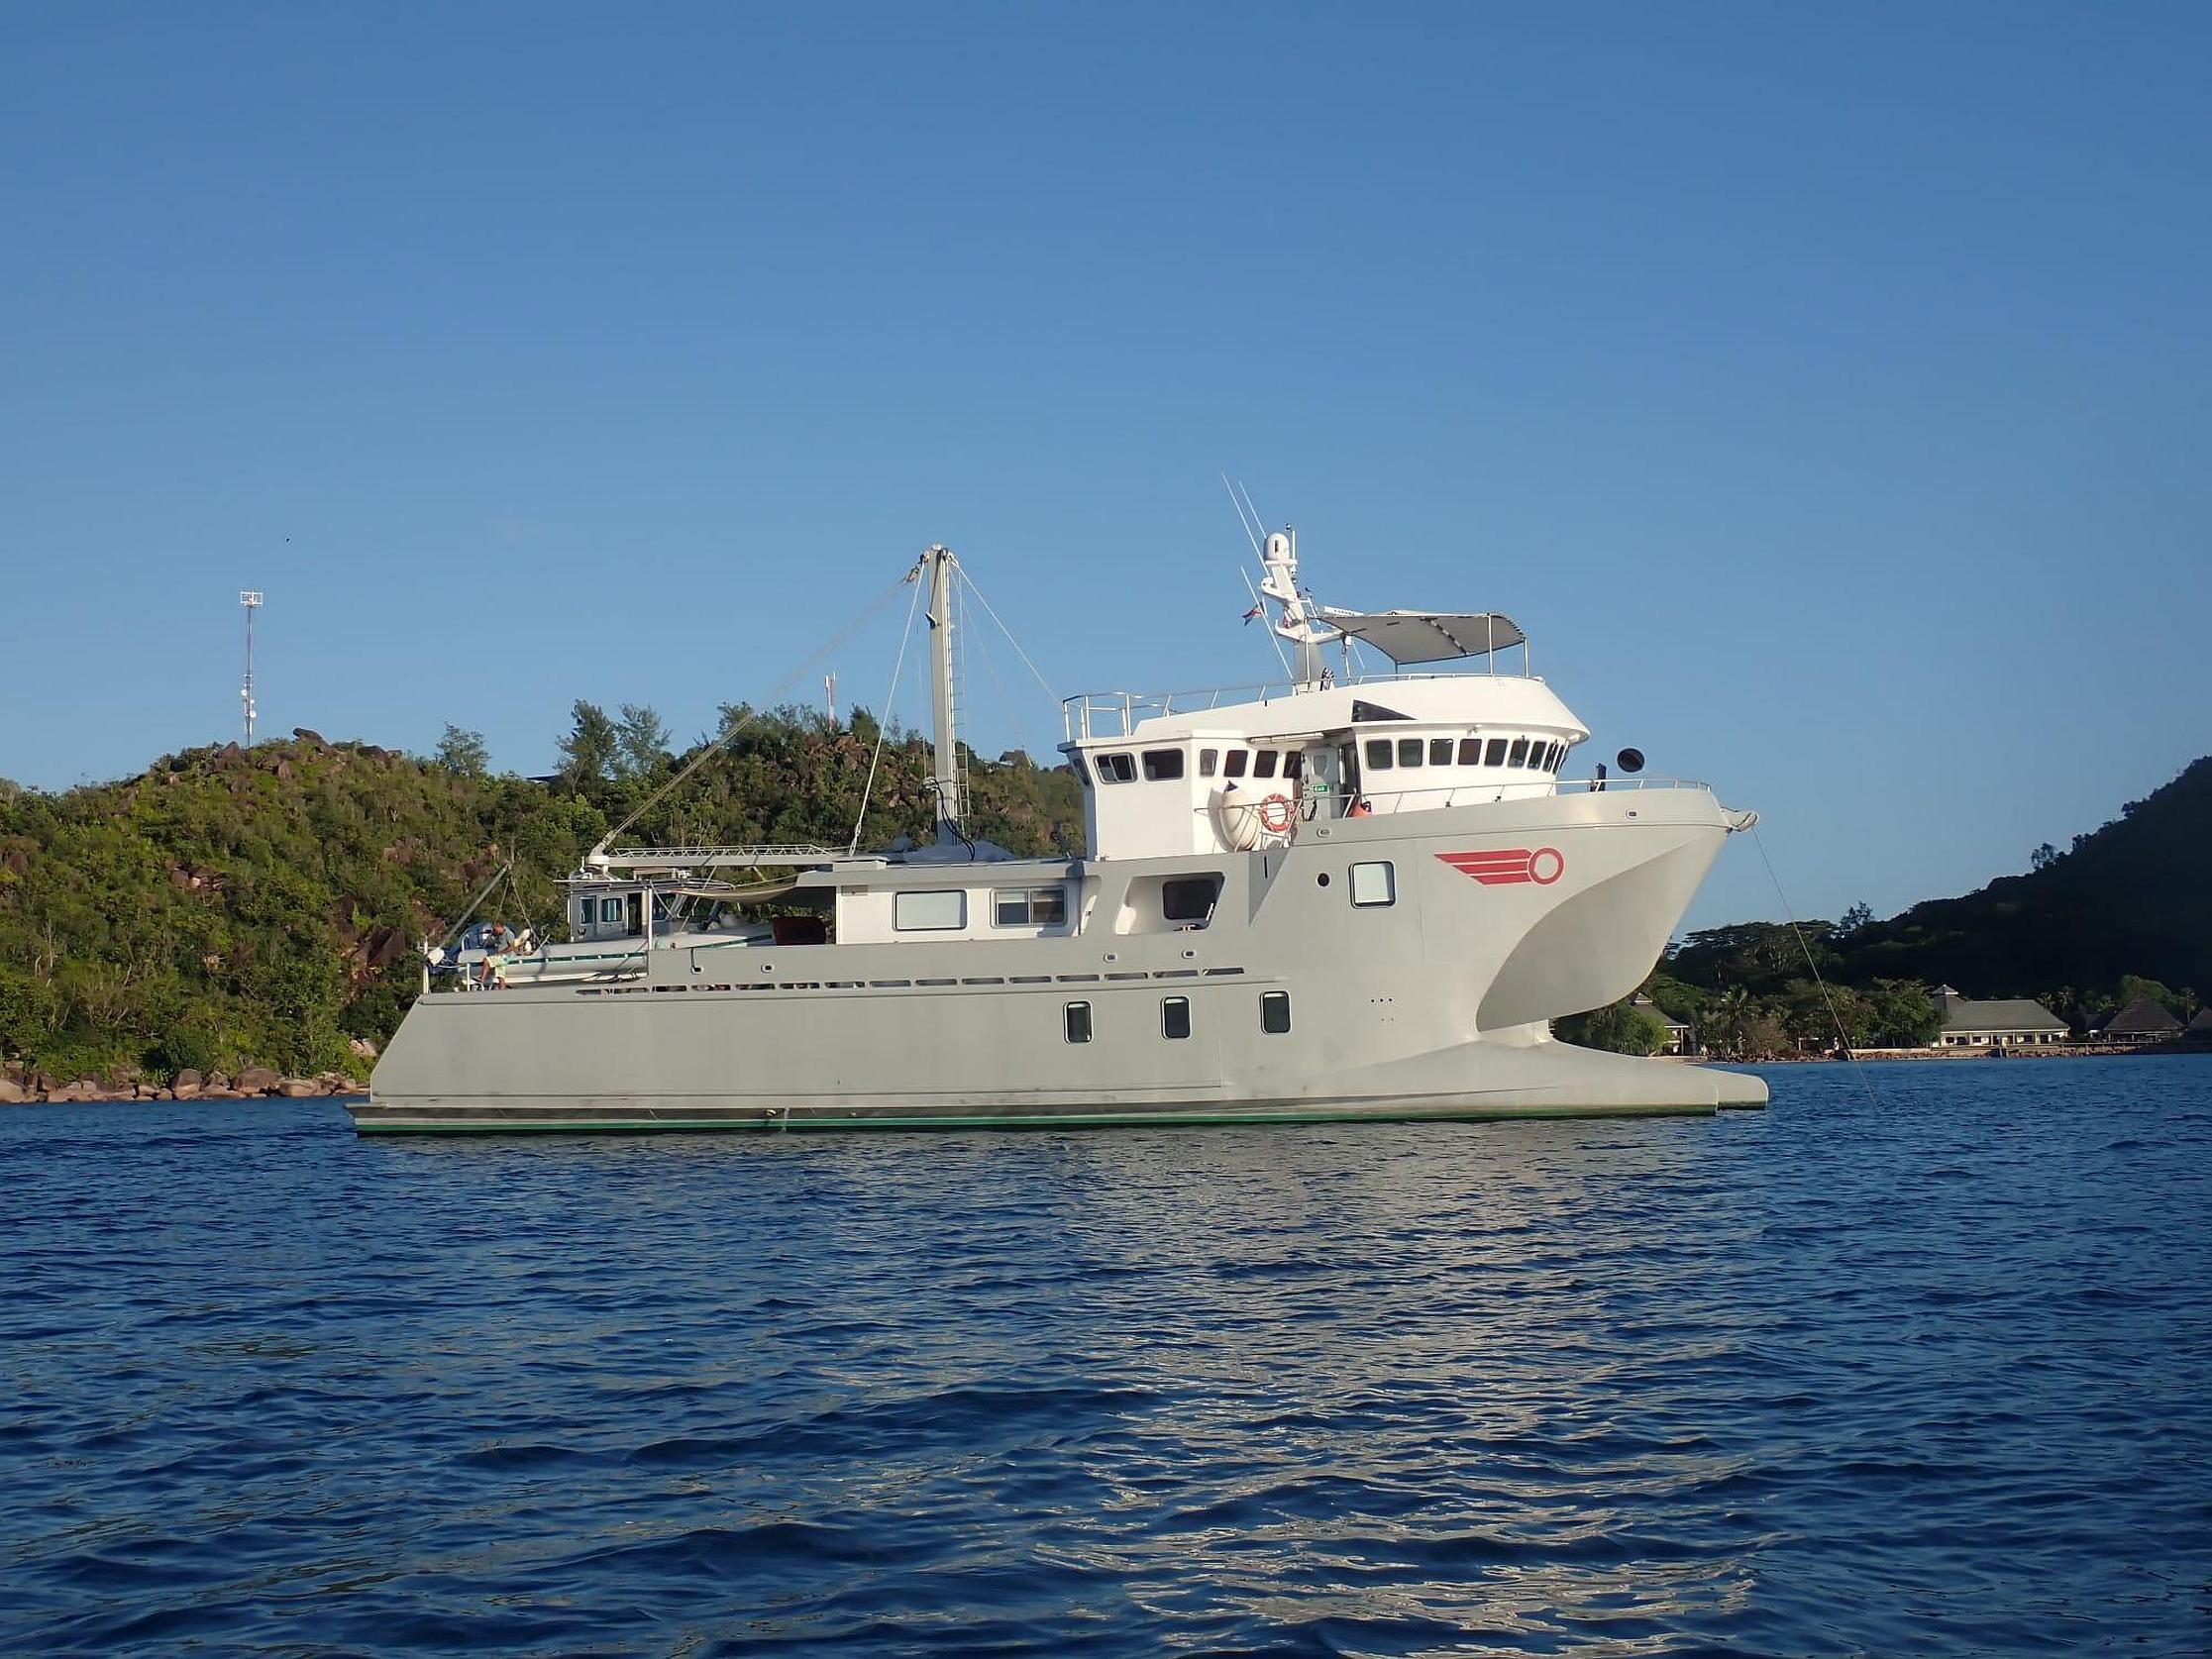 2004 Custom Bon Pelley catamaran